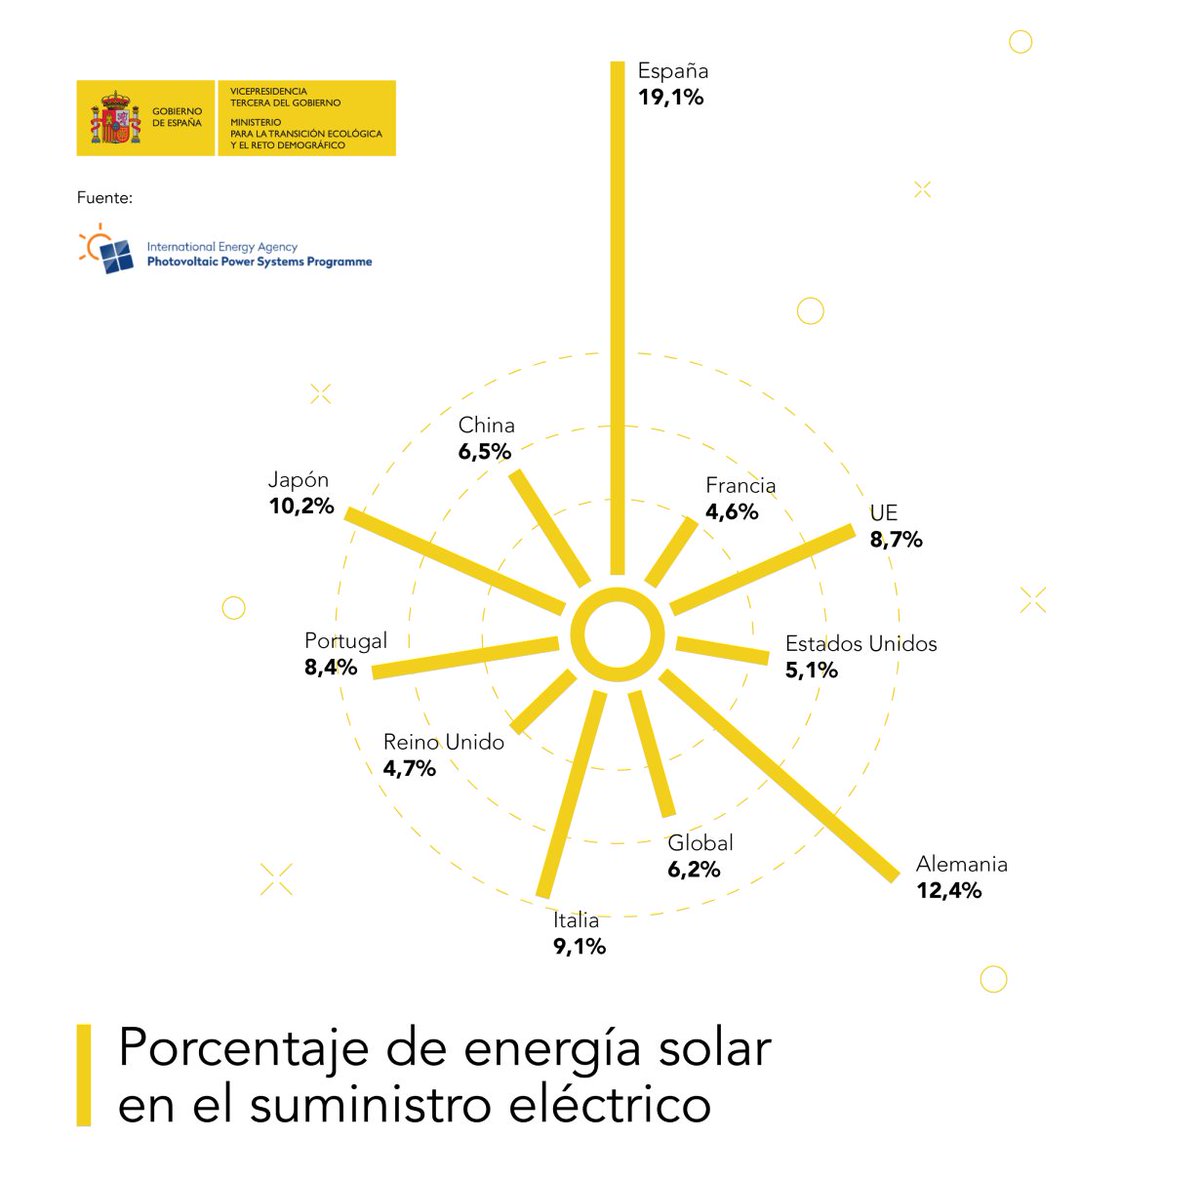 España ☼ brilla en el mundo liderando la agenda verde 🔸 Nos situamos en el 𝒑𝒓𝒊𝒎𝒆𝒓 𝒑𝒖𝒆𝒔𝒕𝒐 𝒎𝒖𝒏𝒅𝒊𝒂𝒍 en porcentaje de energía solar en el suministro eléctrico → Desde 2018 aumentamos un 𝟑𝟏𝟓% la potencia fotovoltaica instalada